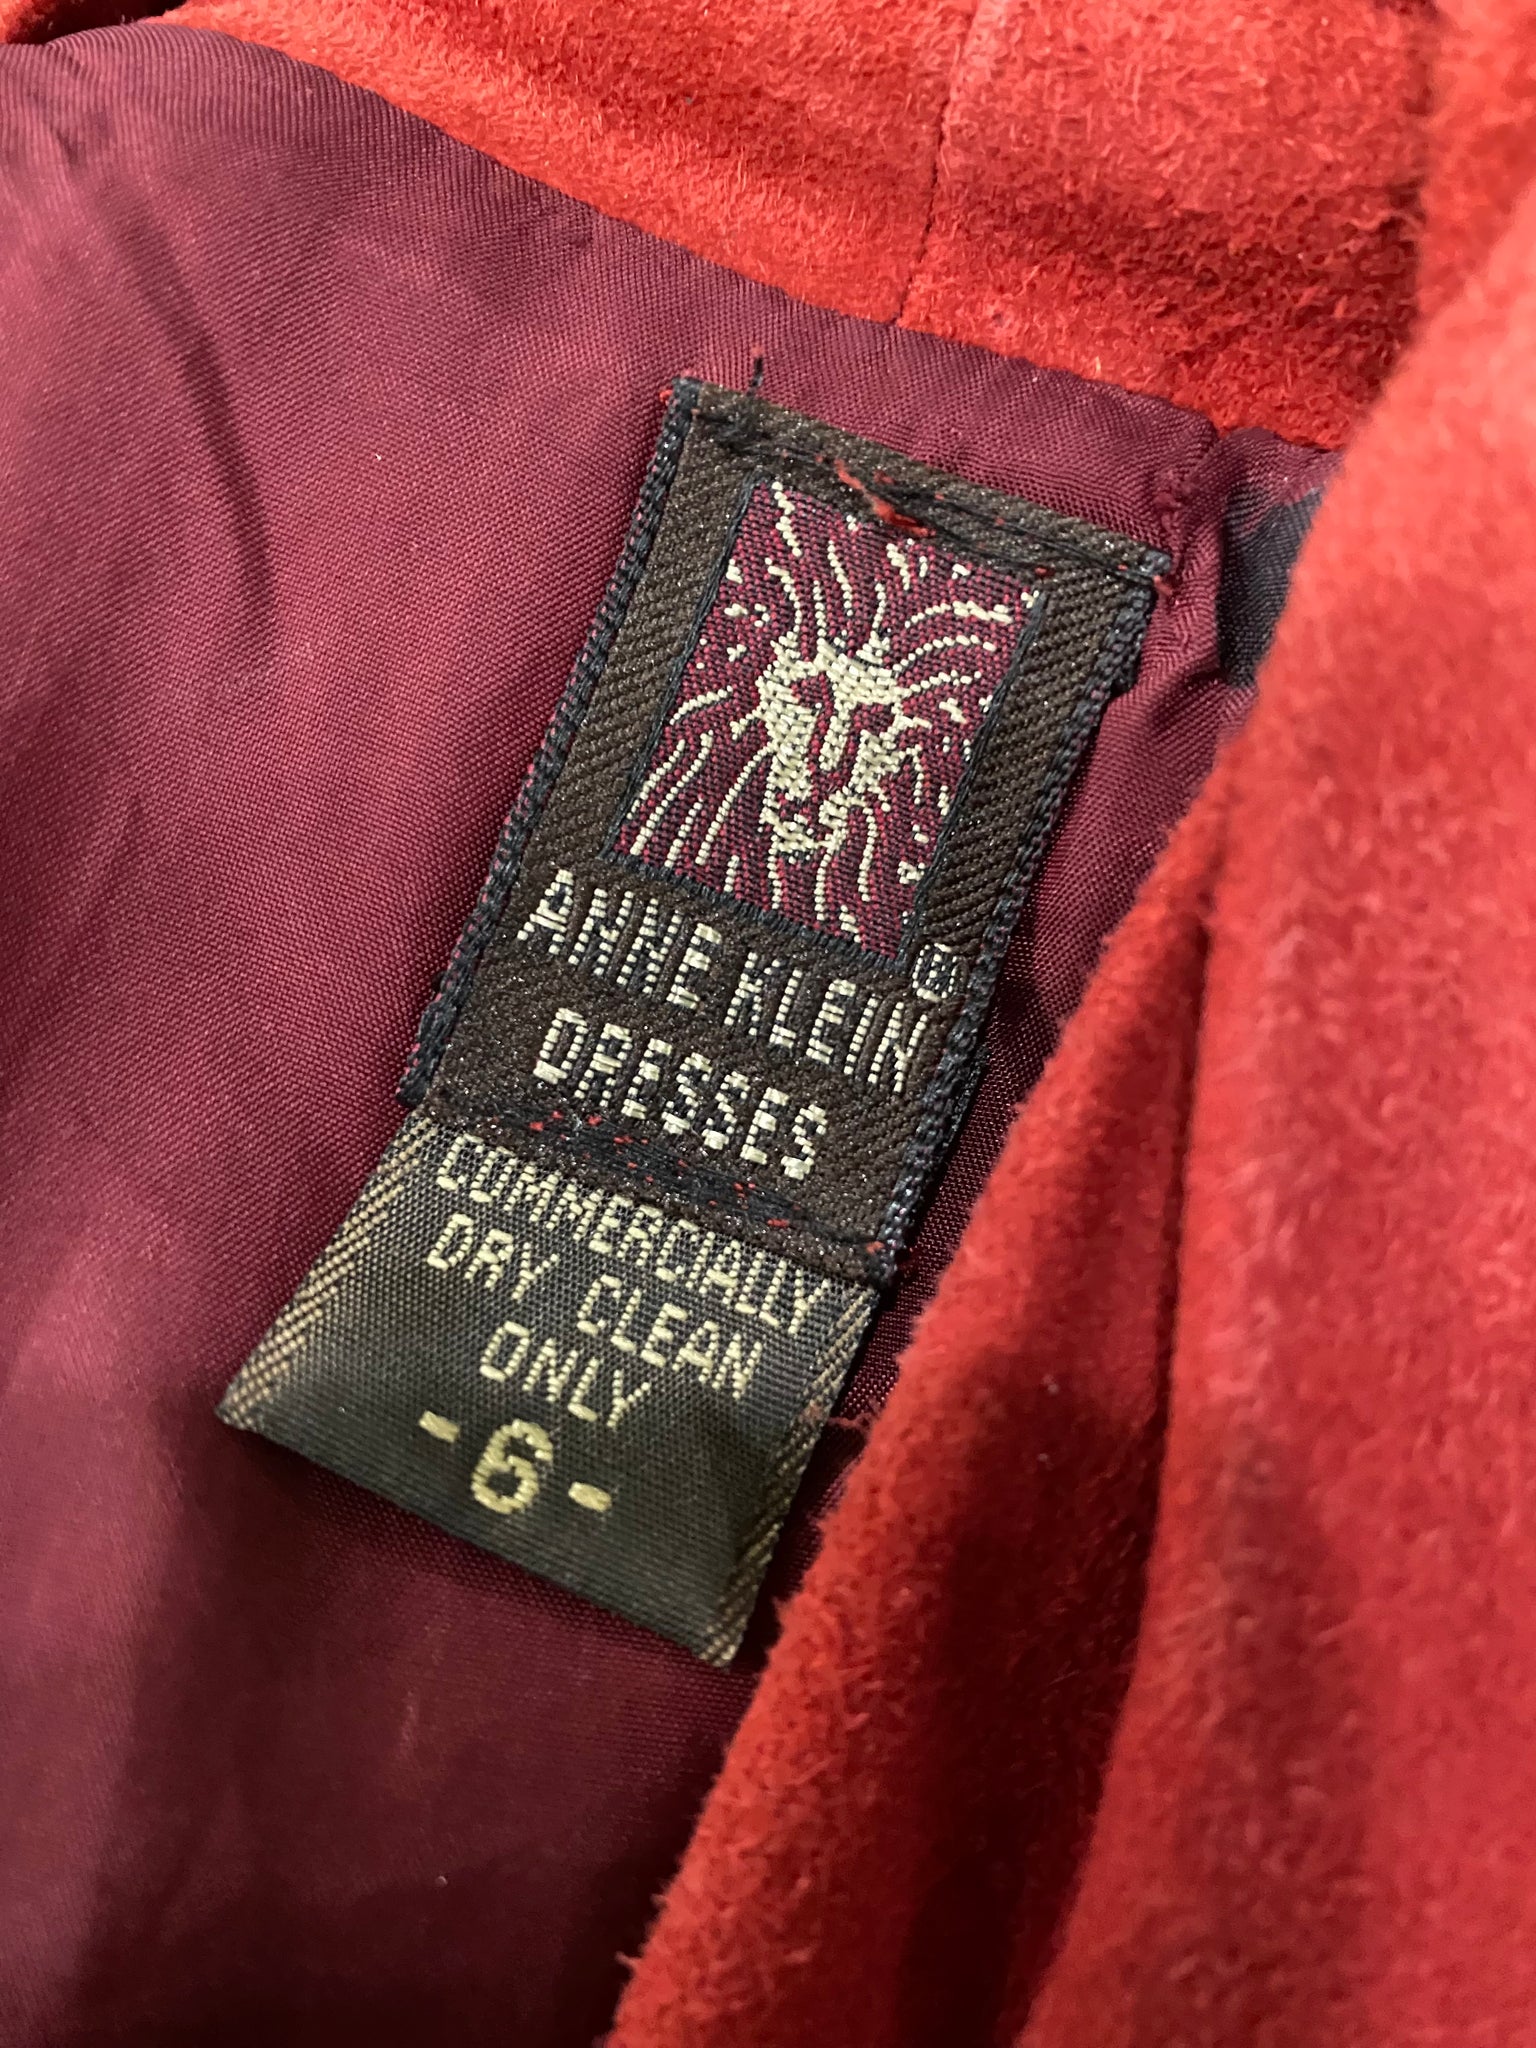 ANNE KLEIN CRANBERRY SUEDE DRESS